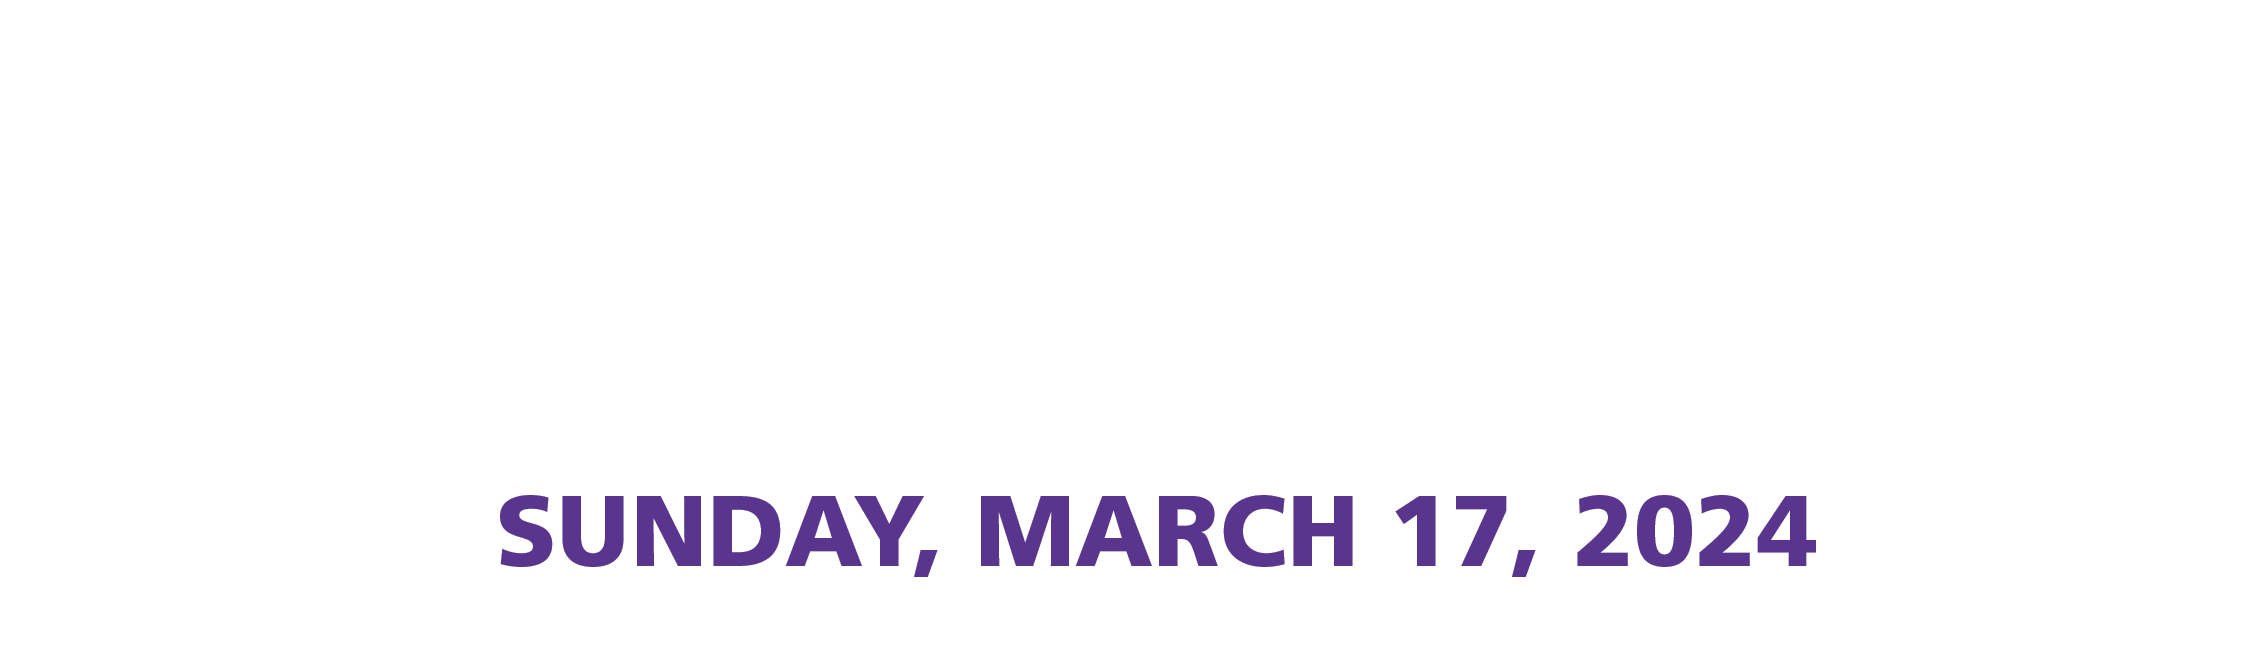 Run For The Kids | Herald Sun | Transurban